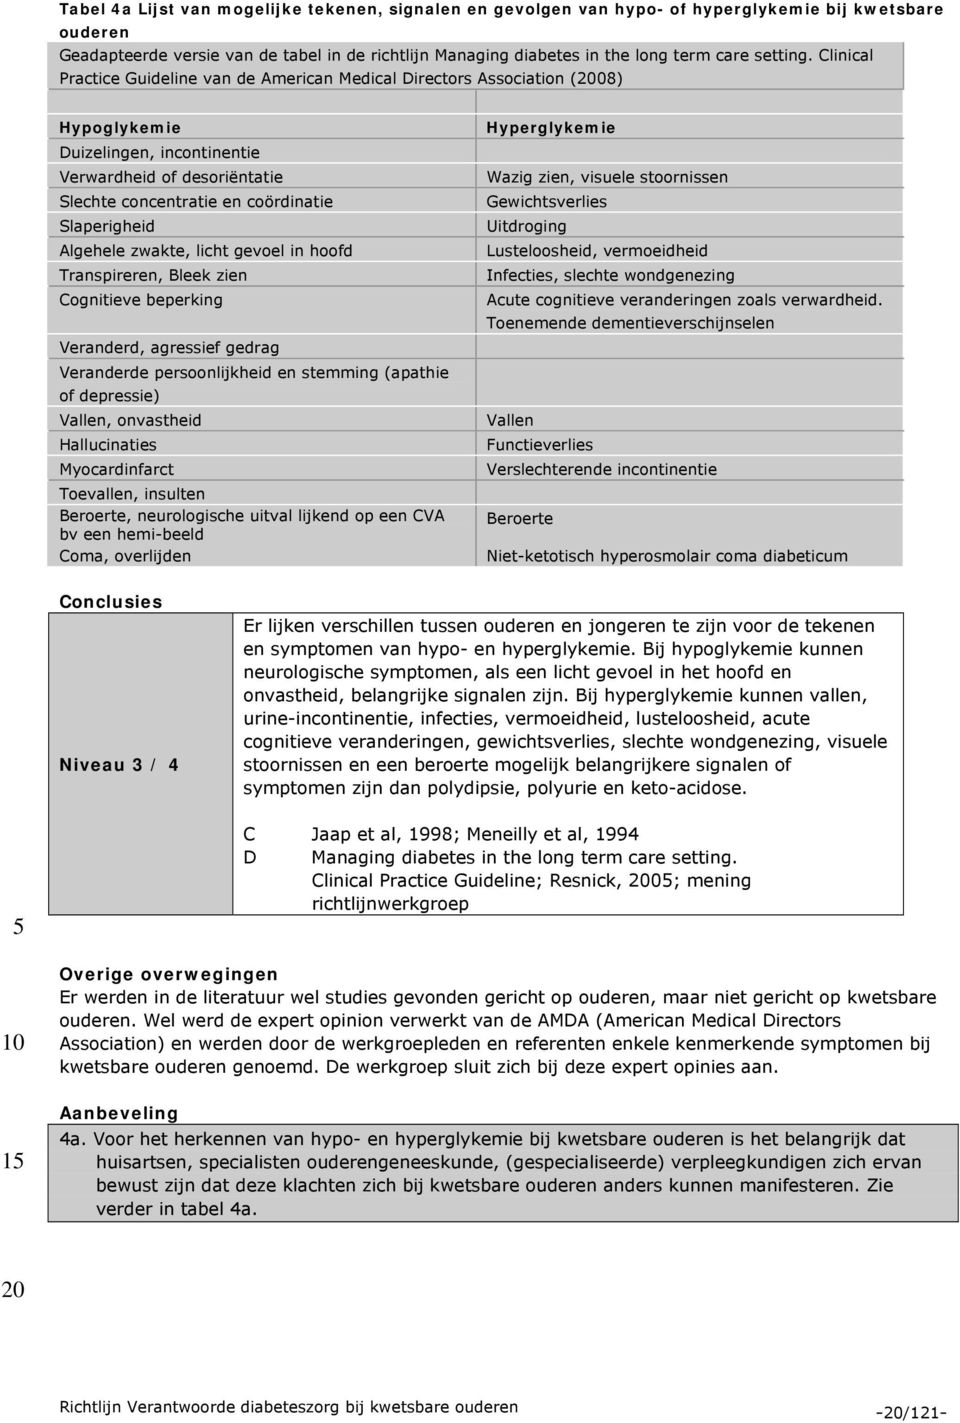 Clinical Practice Guideline van de American Medical Directors Association (08) Hypoglykemie Duizelingen, incontinentie Verwardheid of desoriëntatie Slechte concentratie en coördinatie Slaperigheid